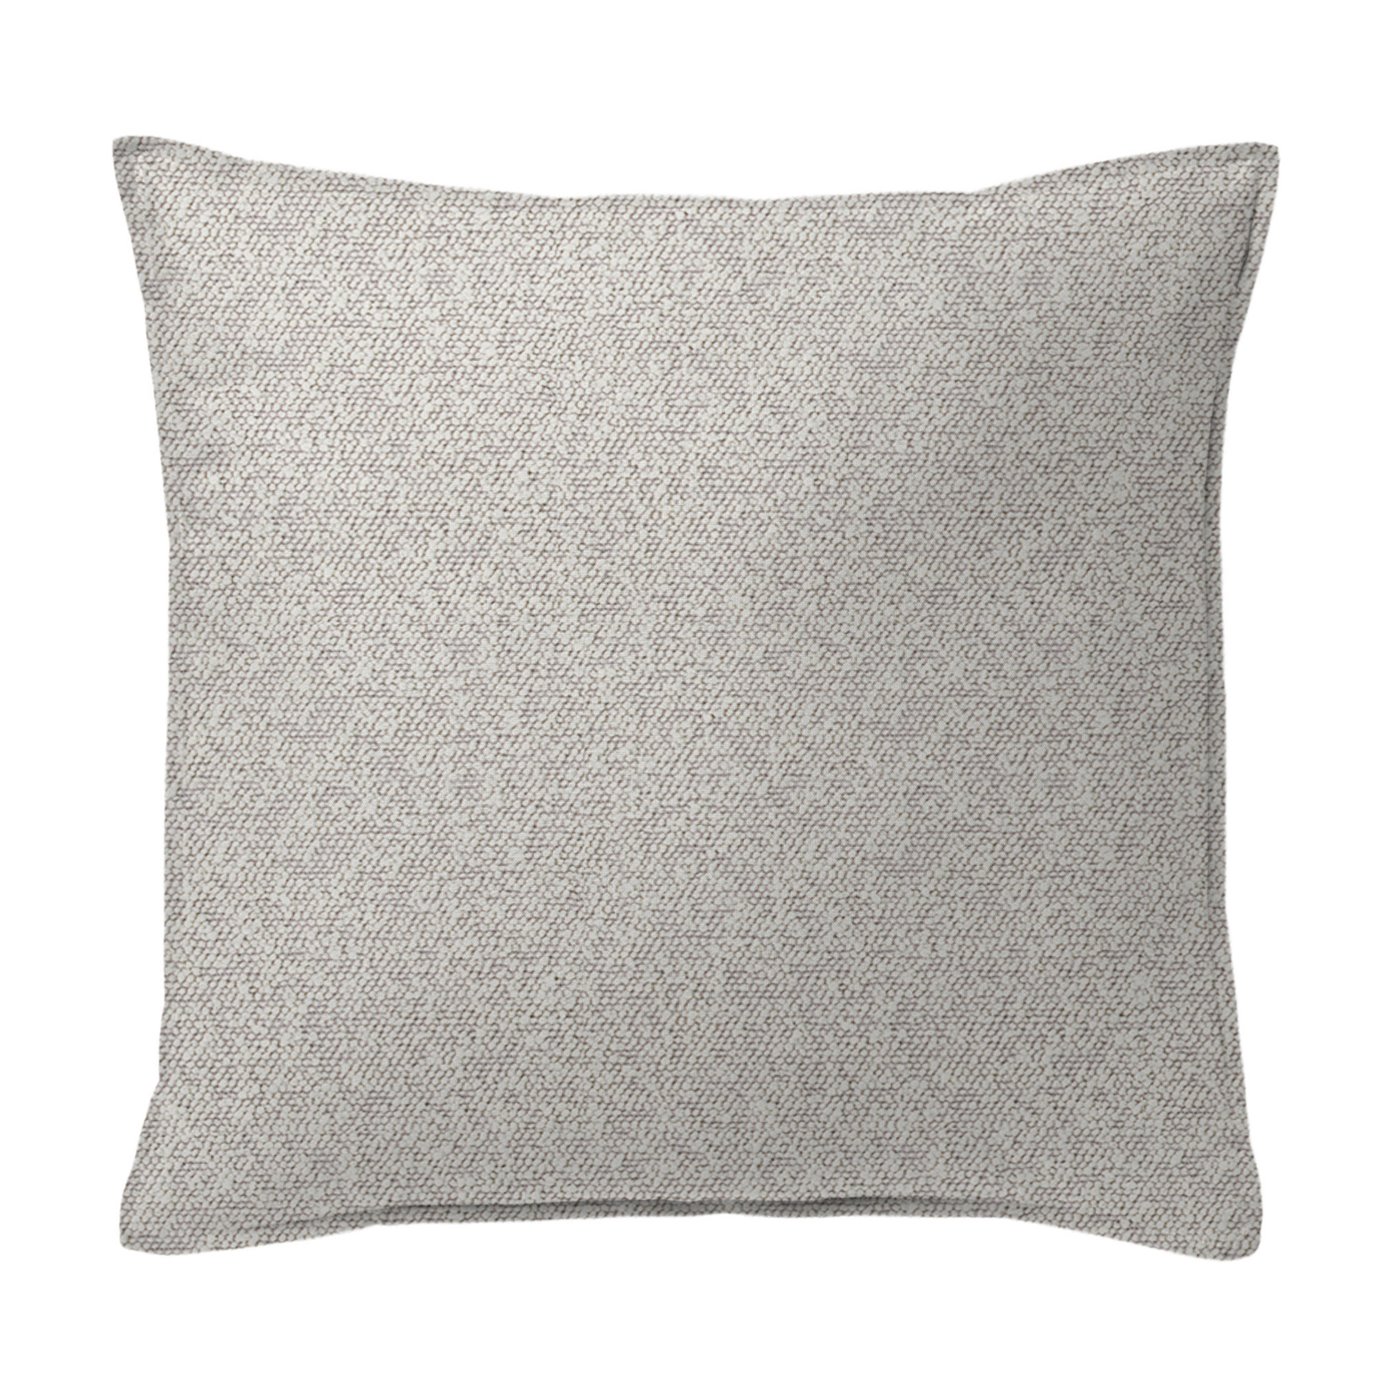 Jackson Boucle Cream Decorative Pillow - Size 20" Square